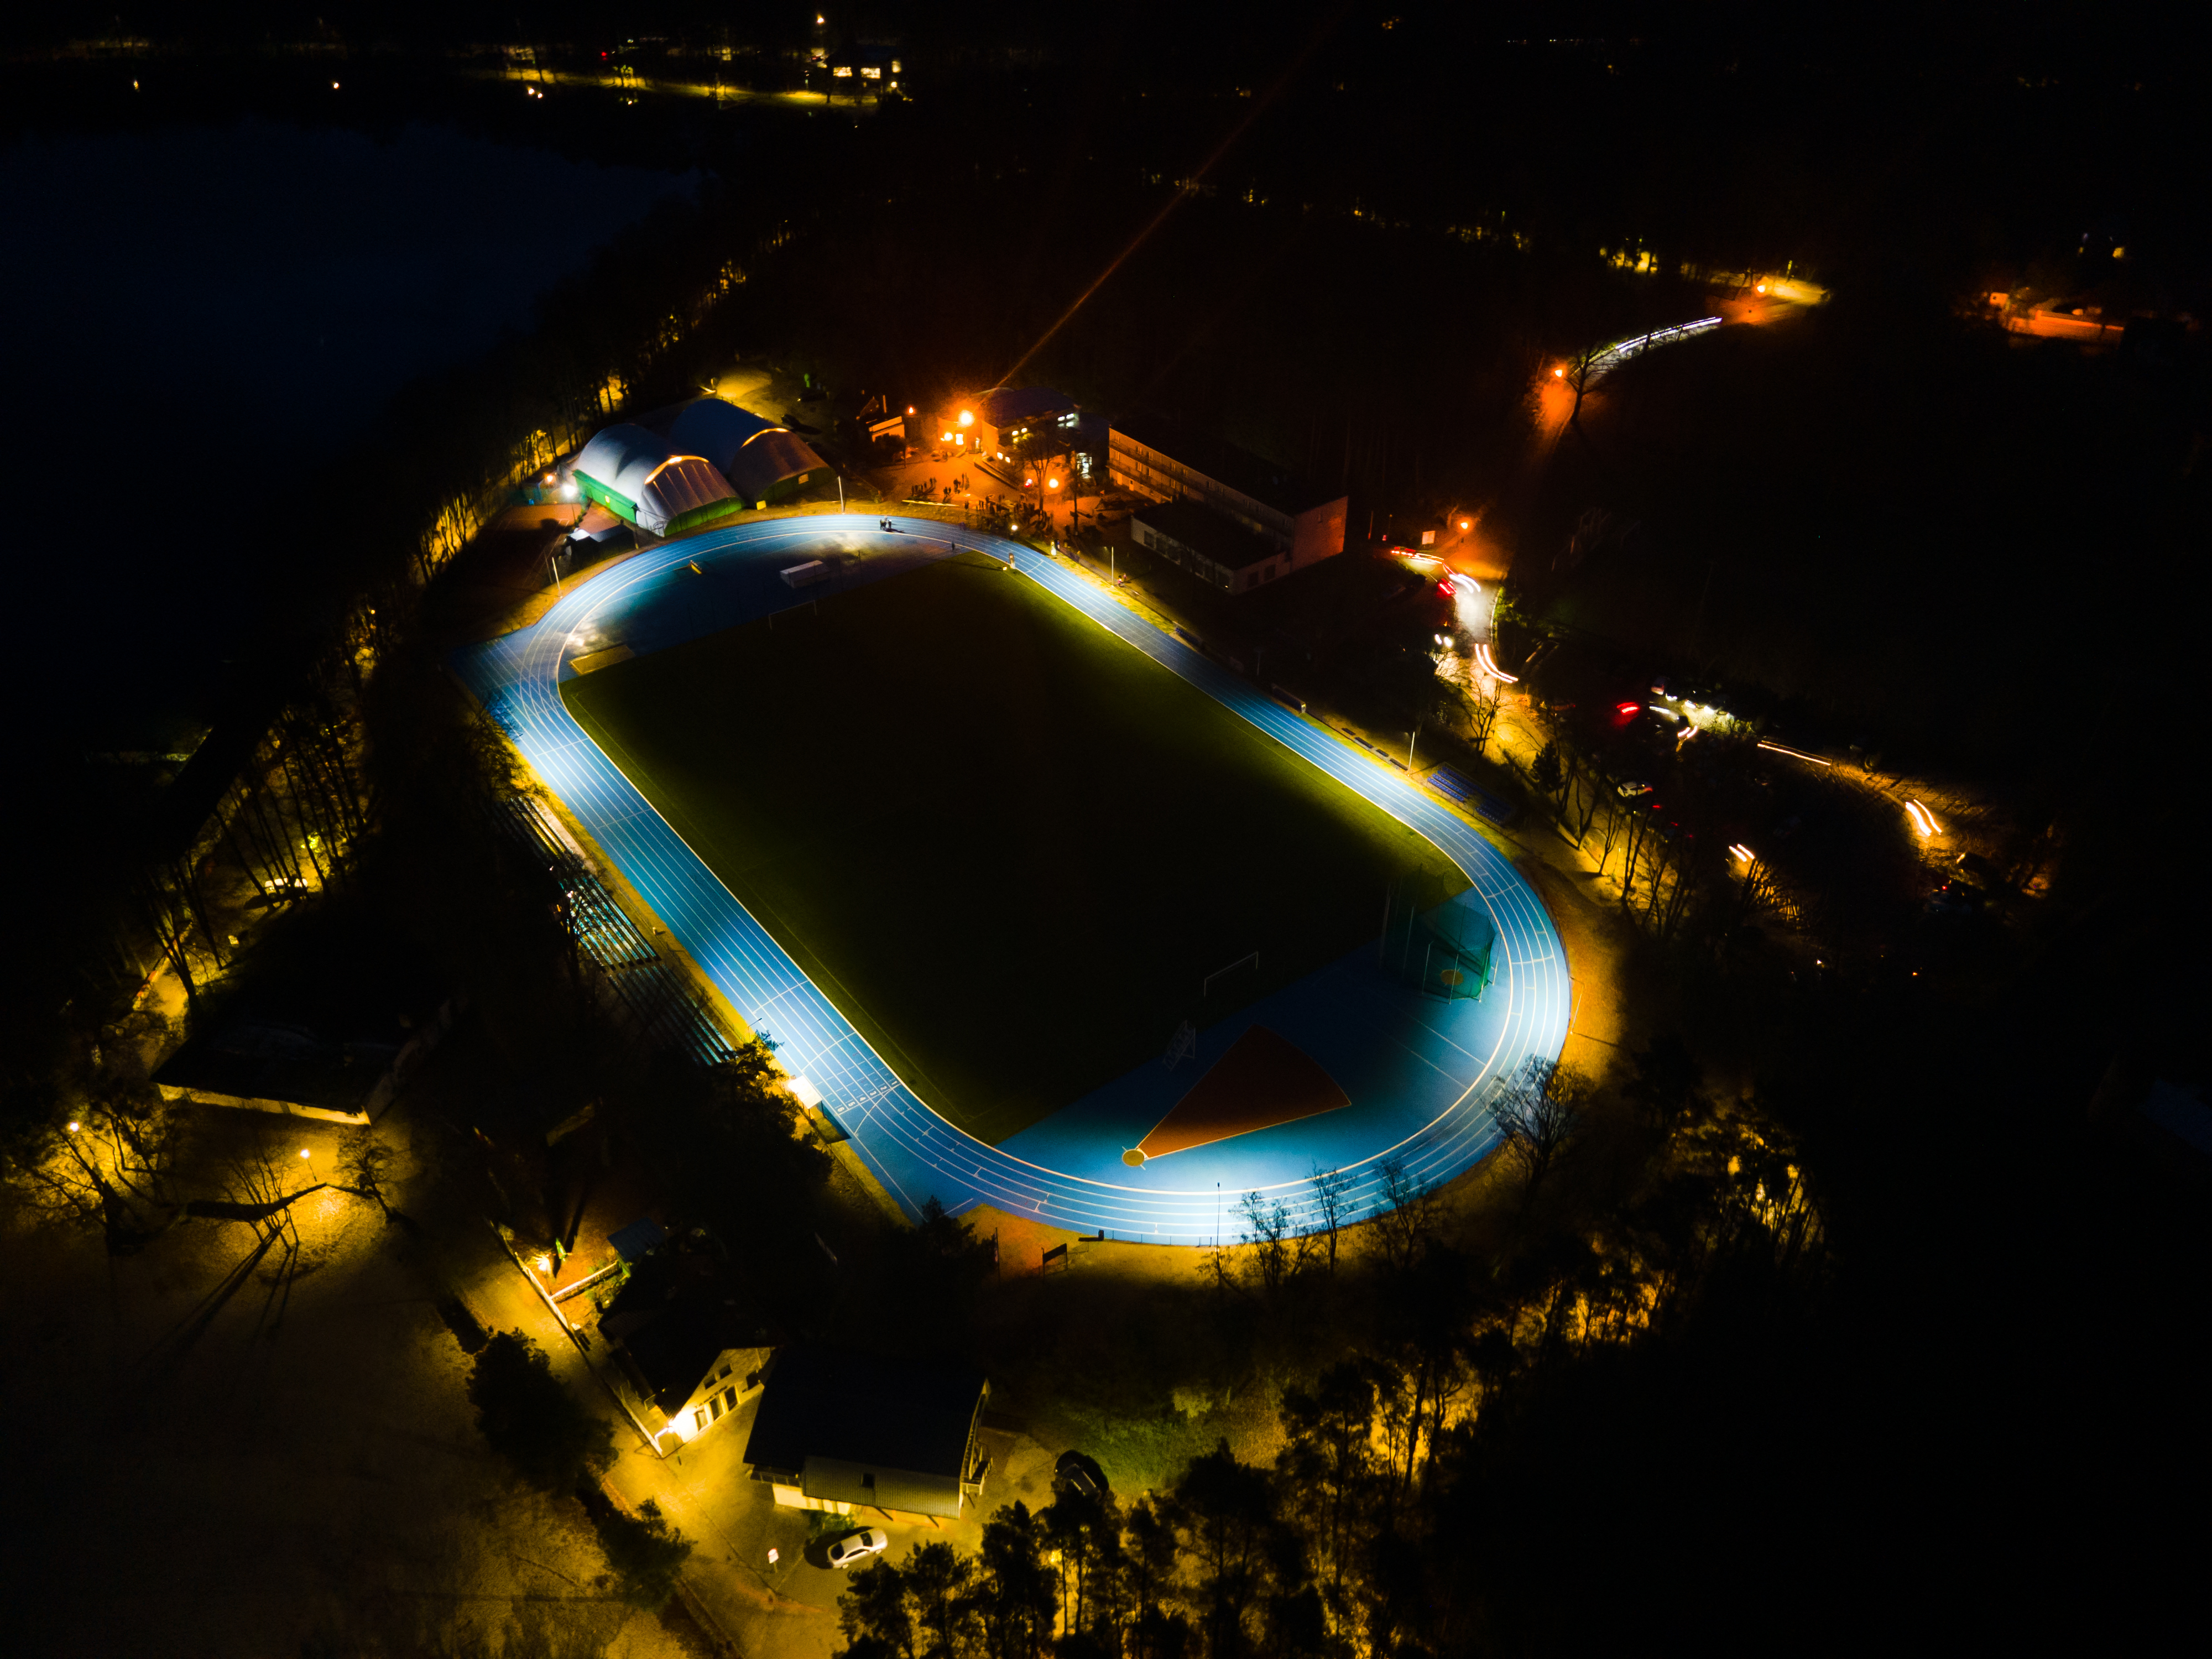 stadion z drona nocą